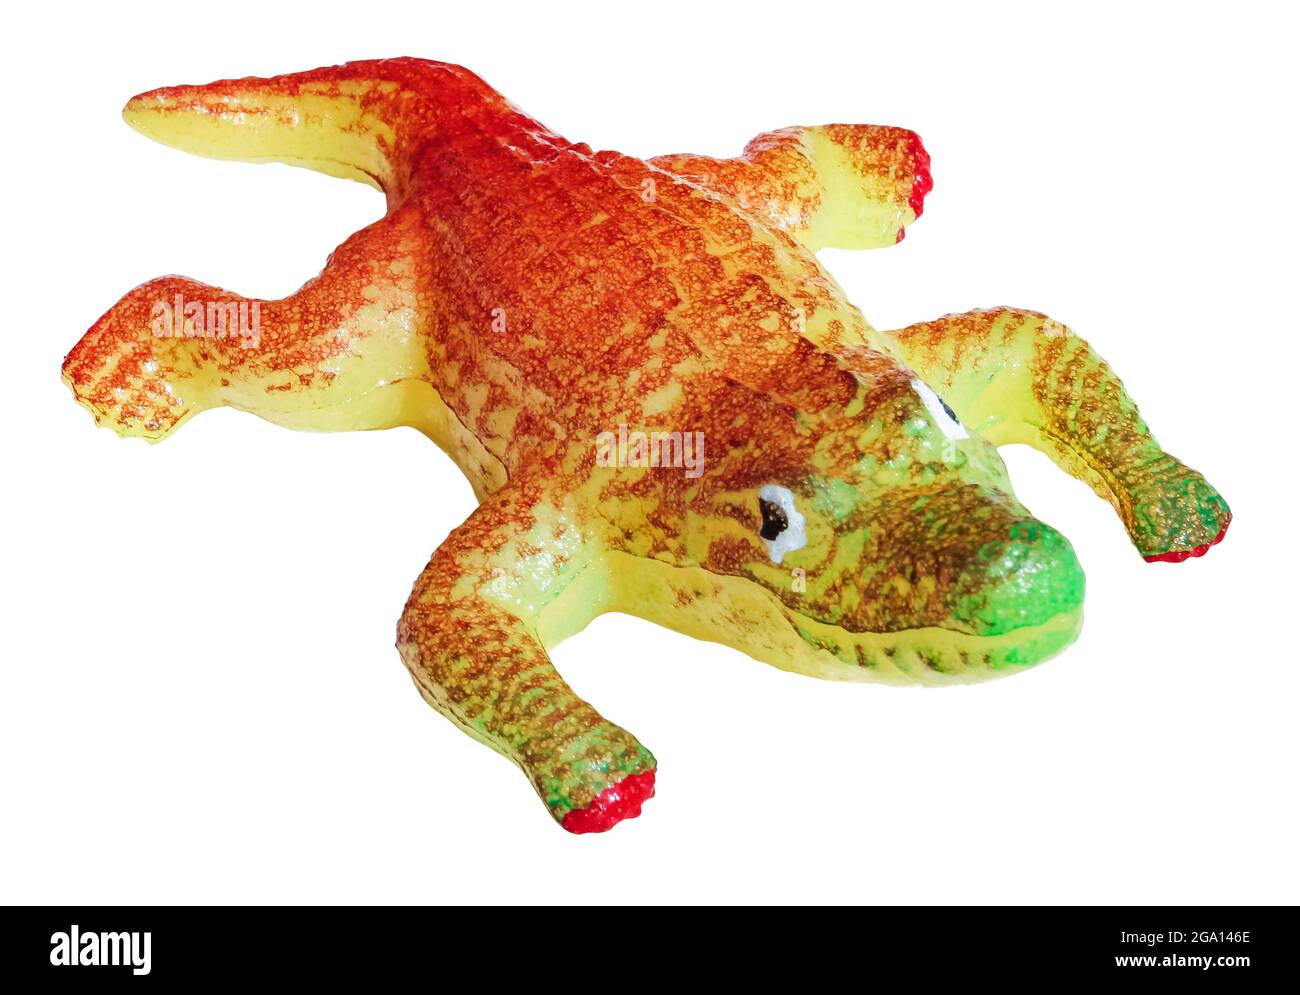 Coccodrillo o alligatore giocattolo in plastica morbida isolato su sfondo bianco, con percorso di ritaglio Foto Stock